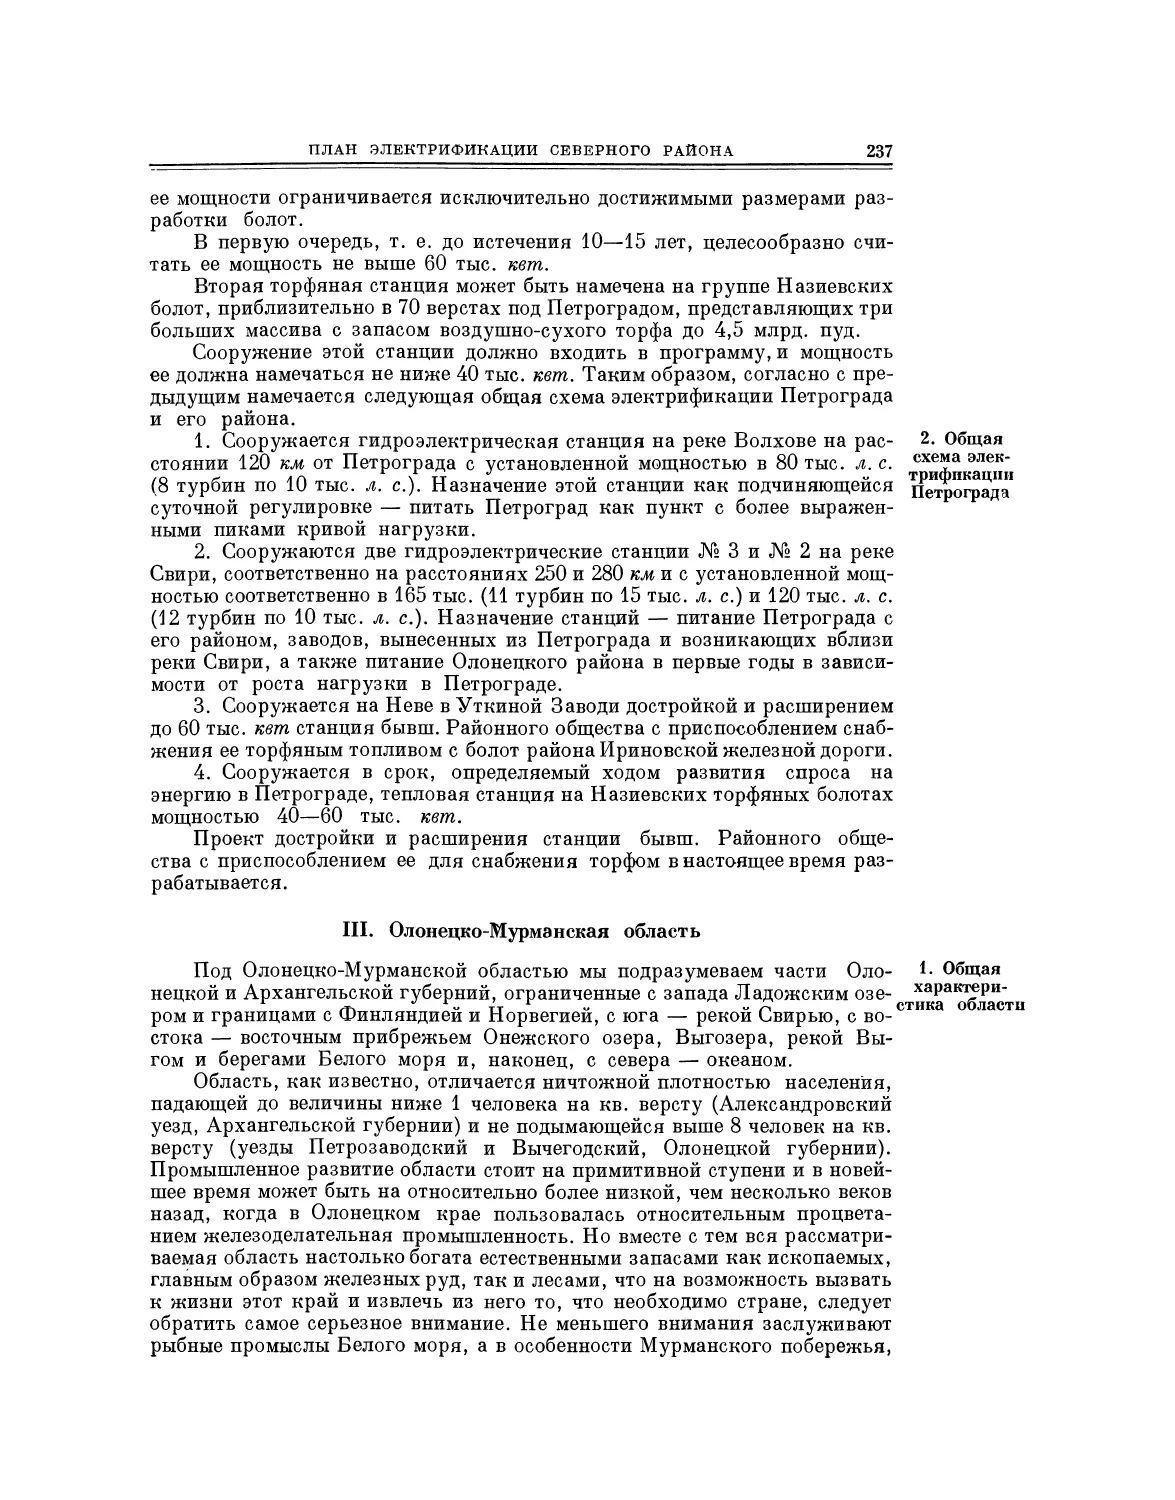 2. Общая схема электрификации Петрограда
III. Олонецко-Мурманская область